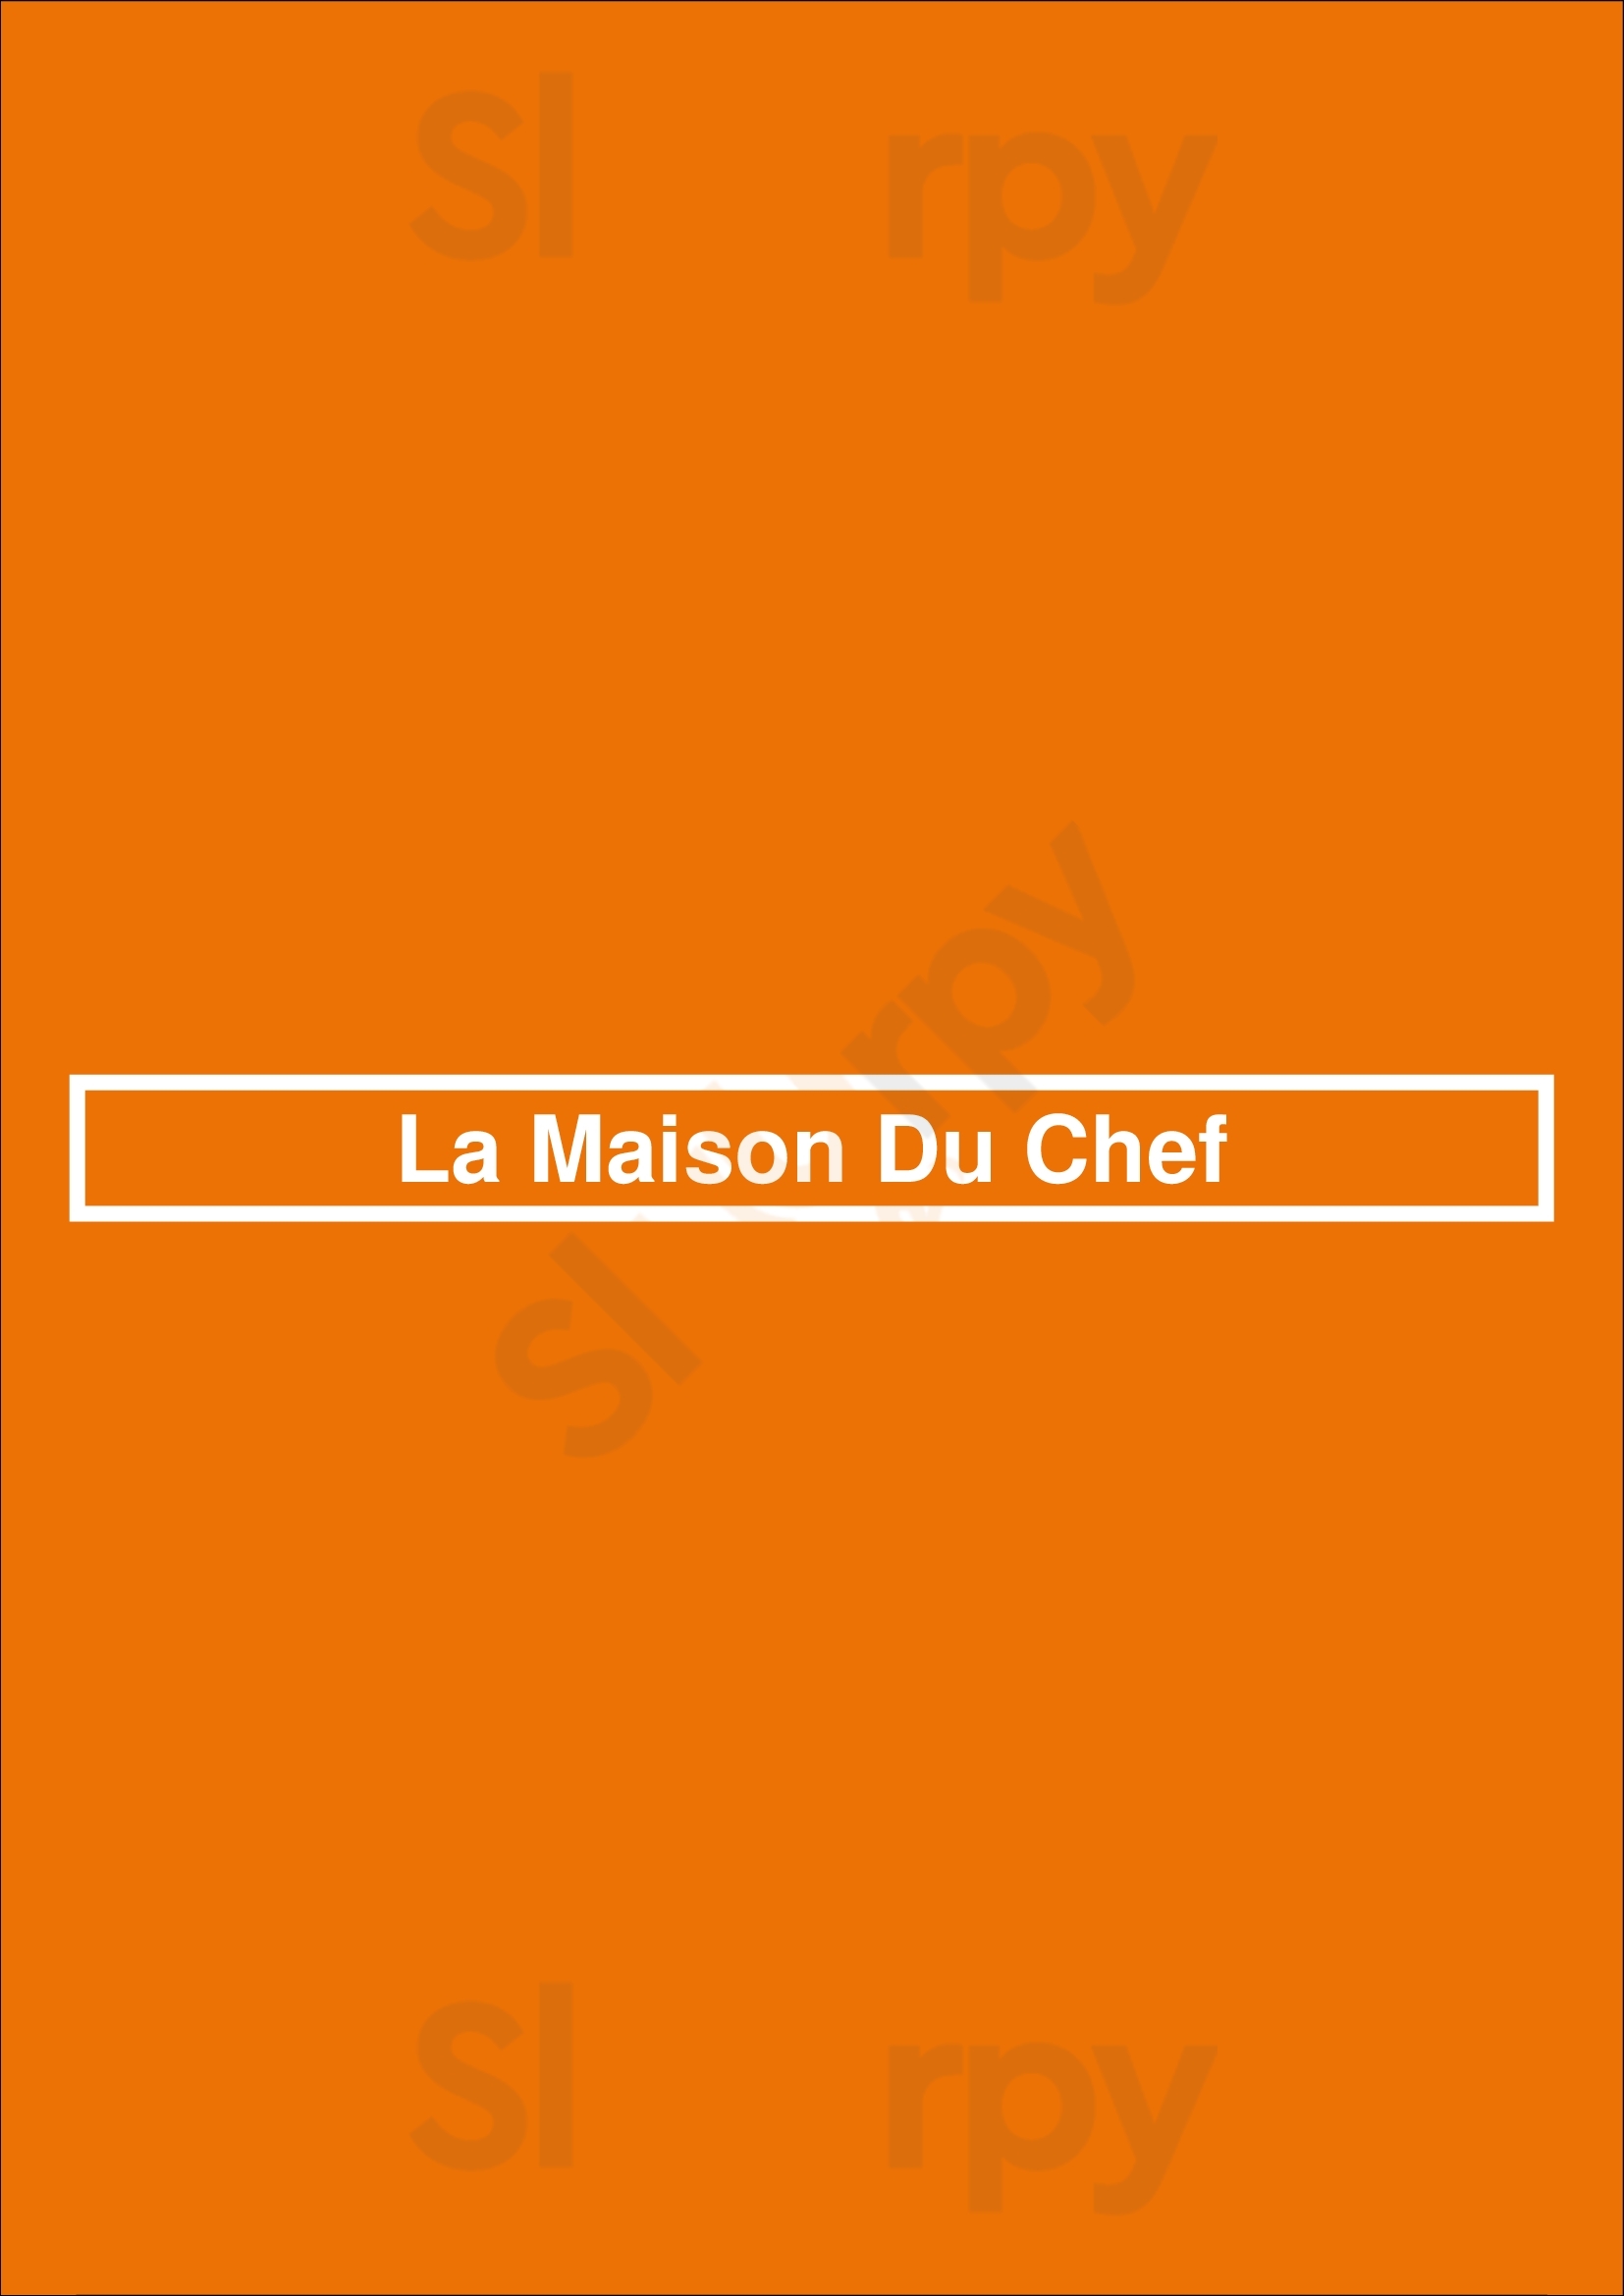 La Maison Du Chef Ardres Menu - 1